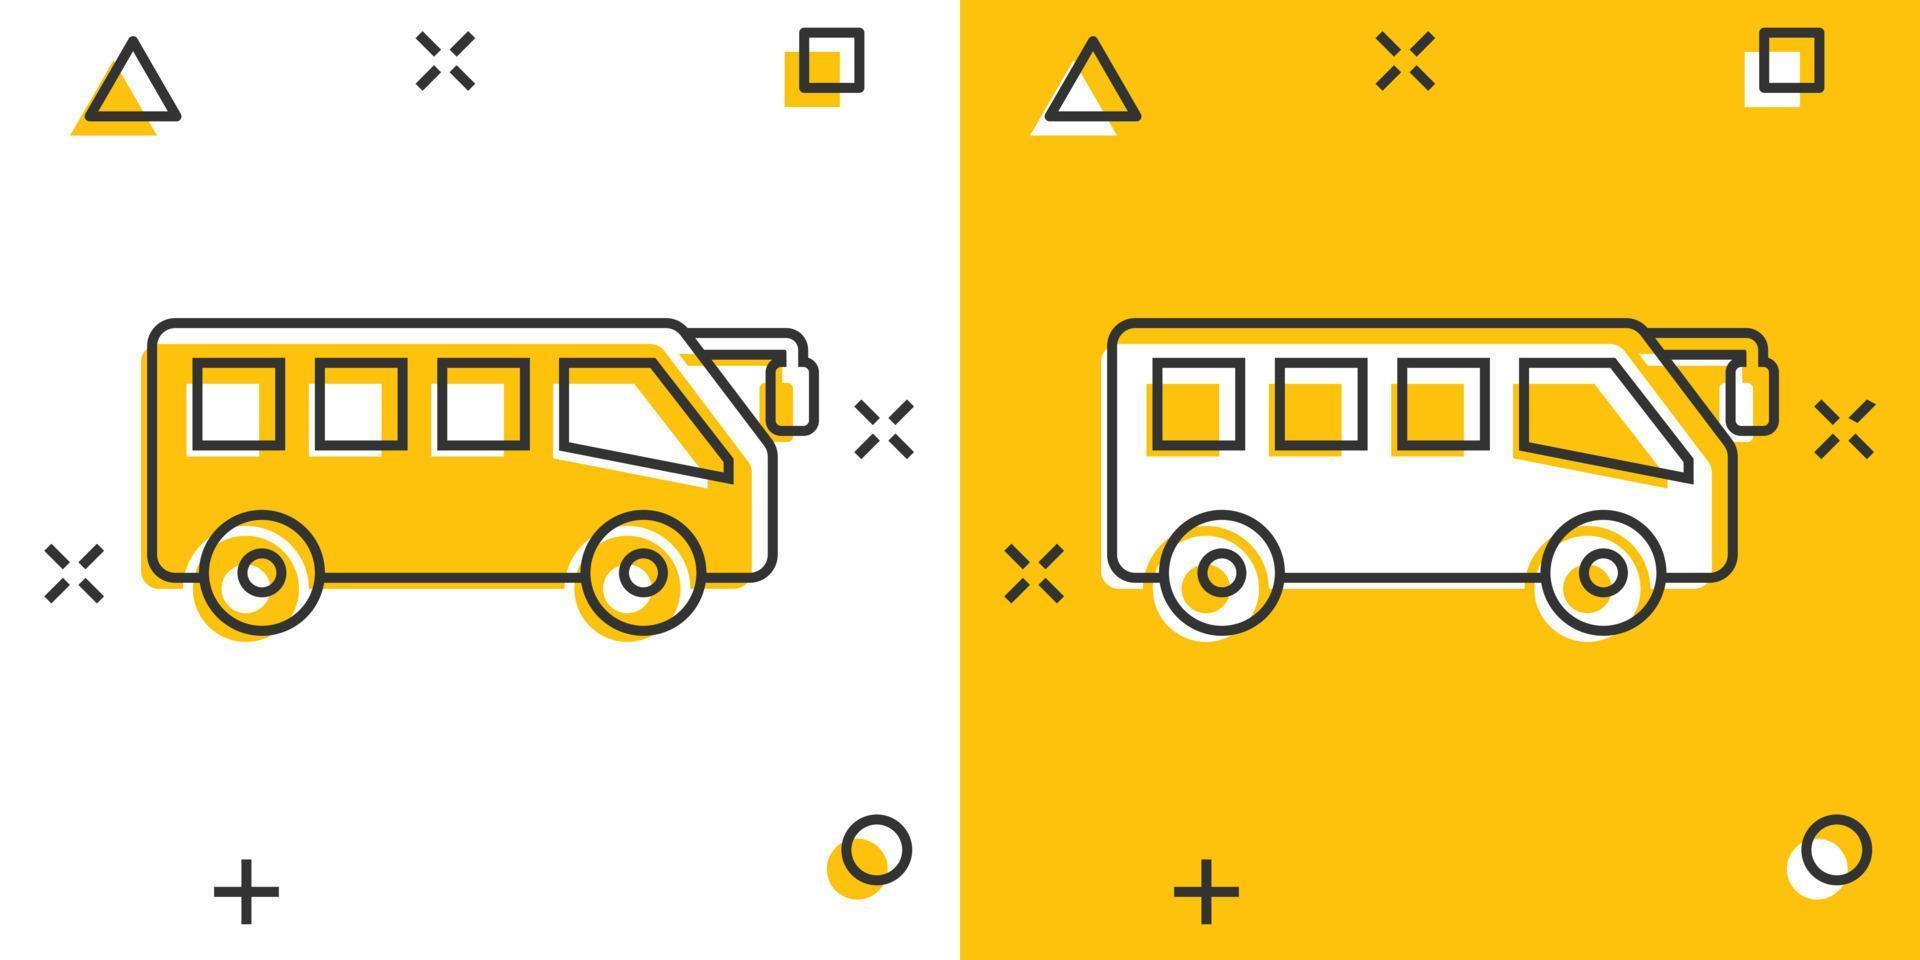 Bus-Symbol im Comic-Stil. Trainerkarikatur-Vektorillustration auf weißem lokalisiertem Hintergrund. Geschäftskonzept für Autobus-Fahrzeug-Splash-Effekt. vektor